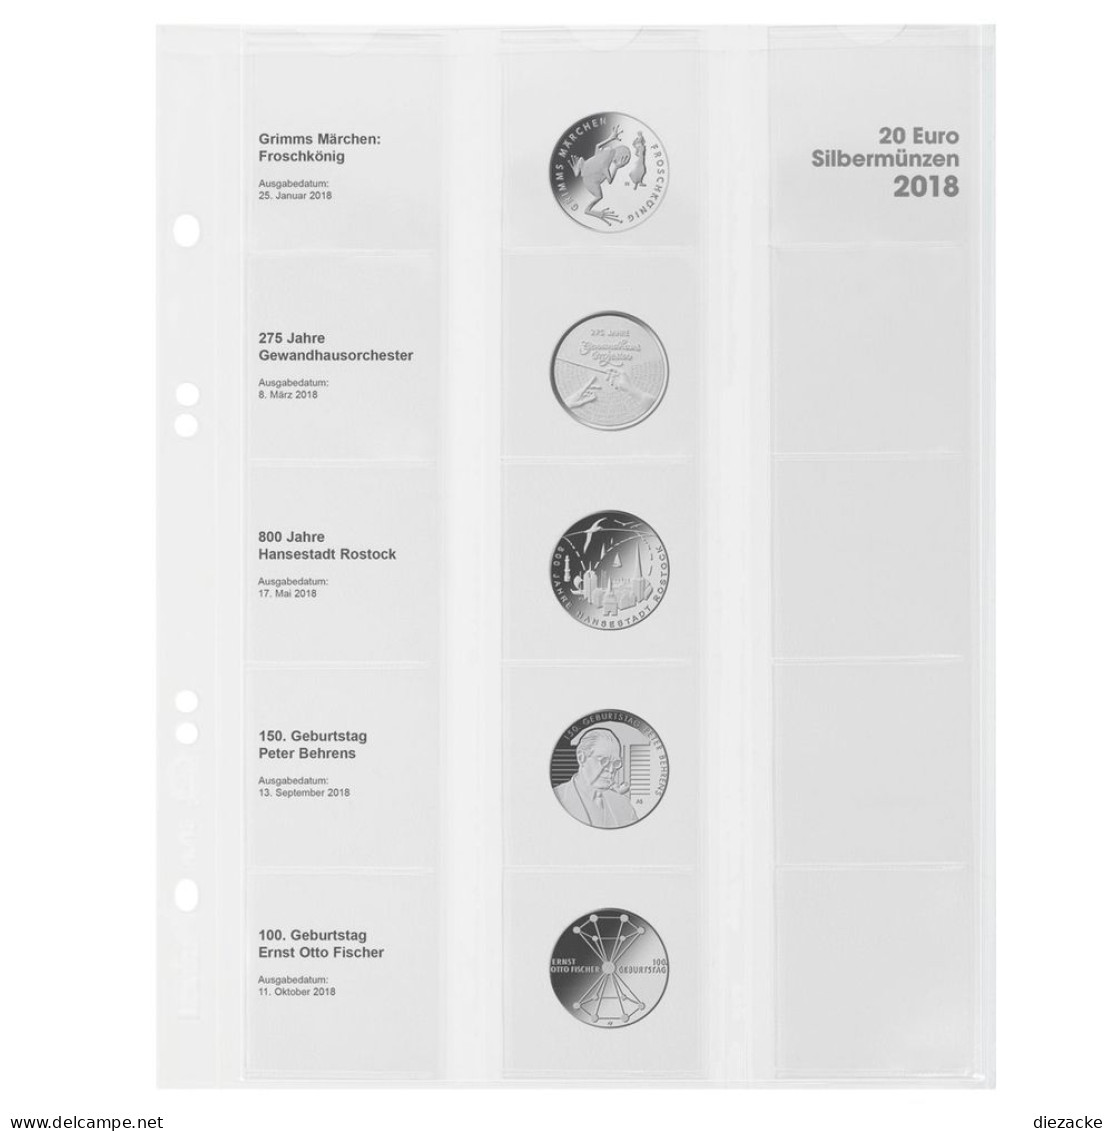 Lindner Vordruckblatt Publica M Für 20 Euro-Silbermünzen MU20E18 Neu - Supplies And Equipment